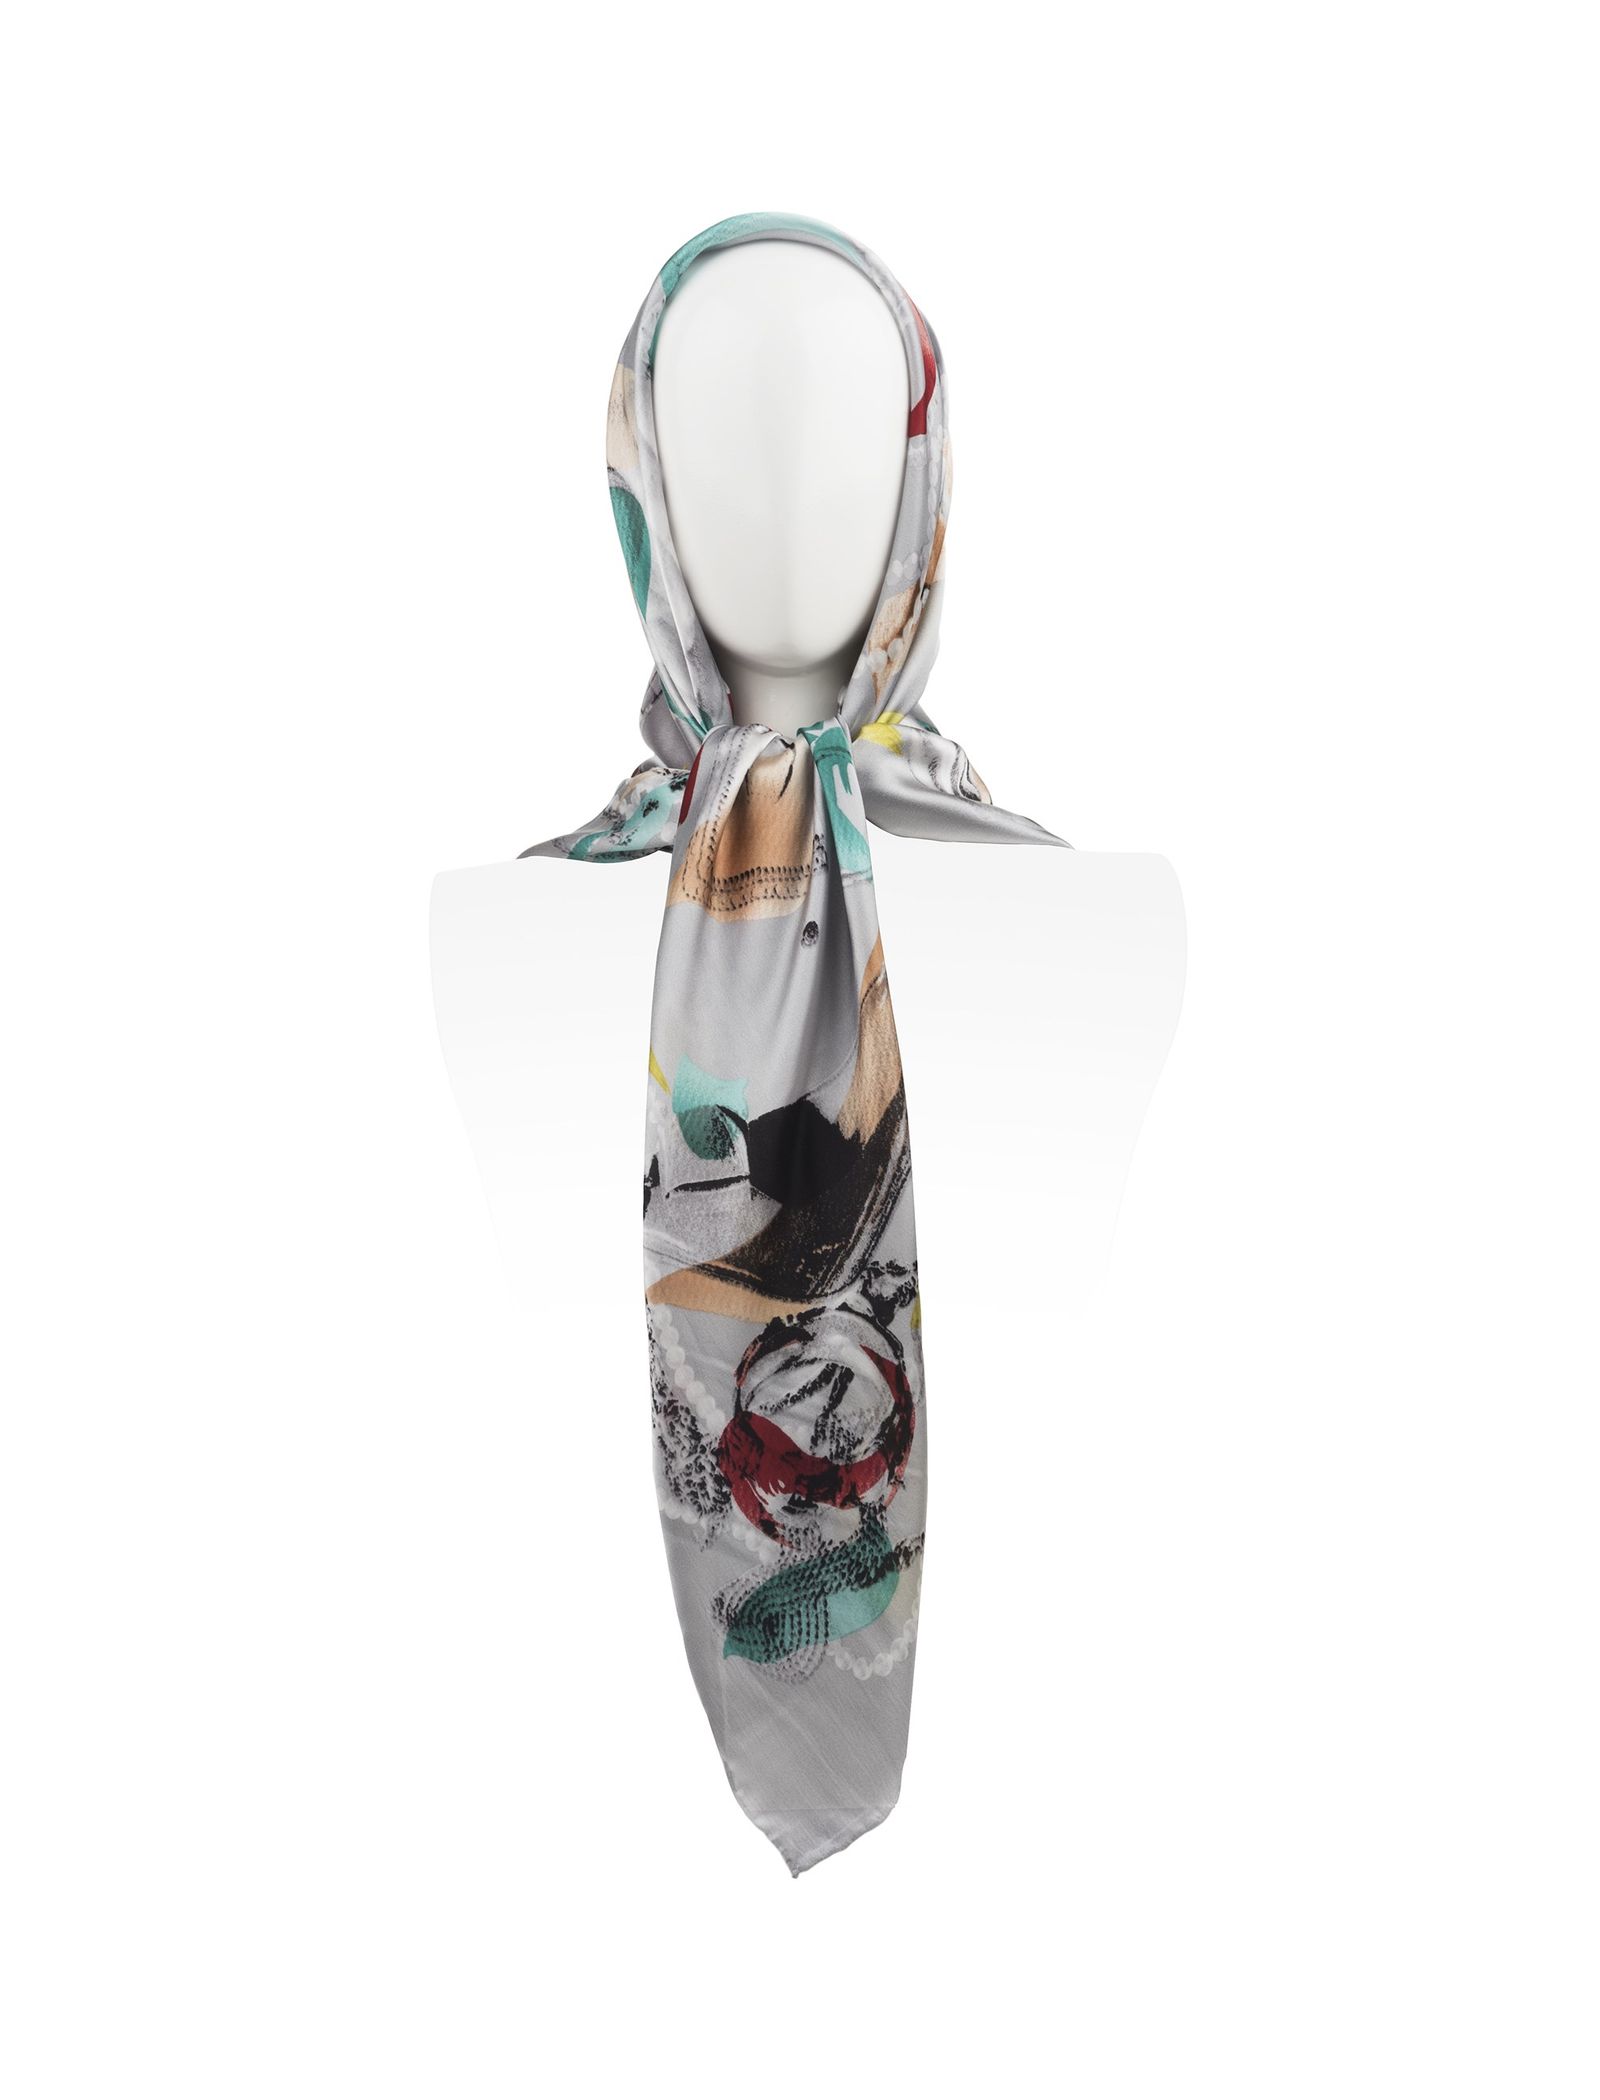 روسری ابریشمی زنانه - رزتی تک سایز - طوسي - 2